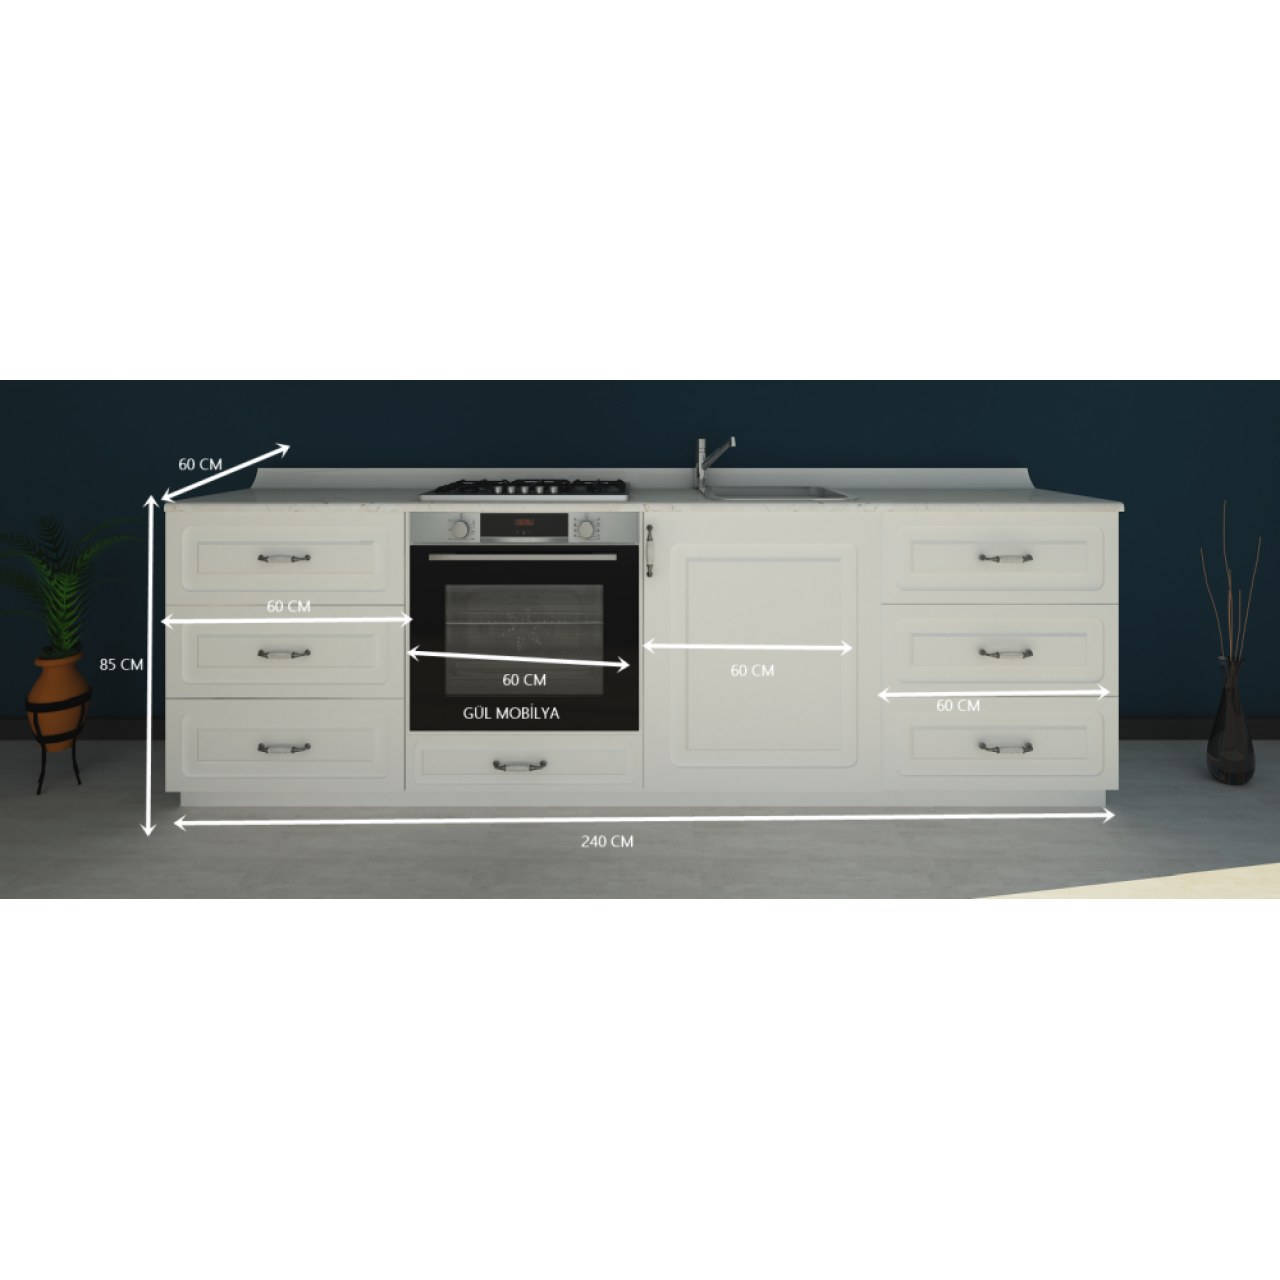 240 cm Mutfak alt dolap MEBRAN kapaklı Hazır modüler mutfak dolabı